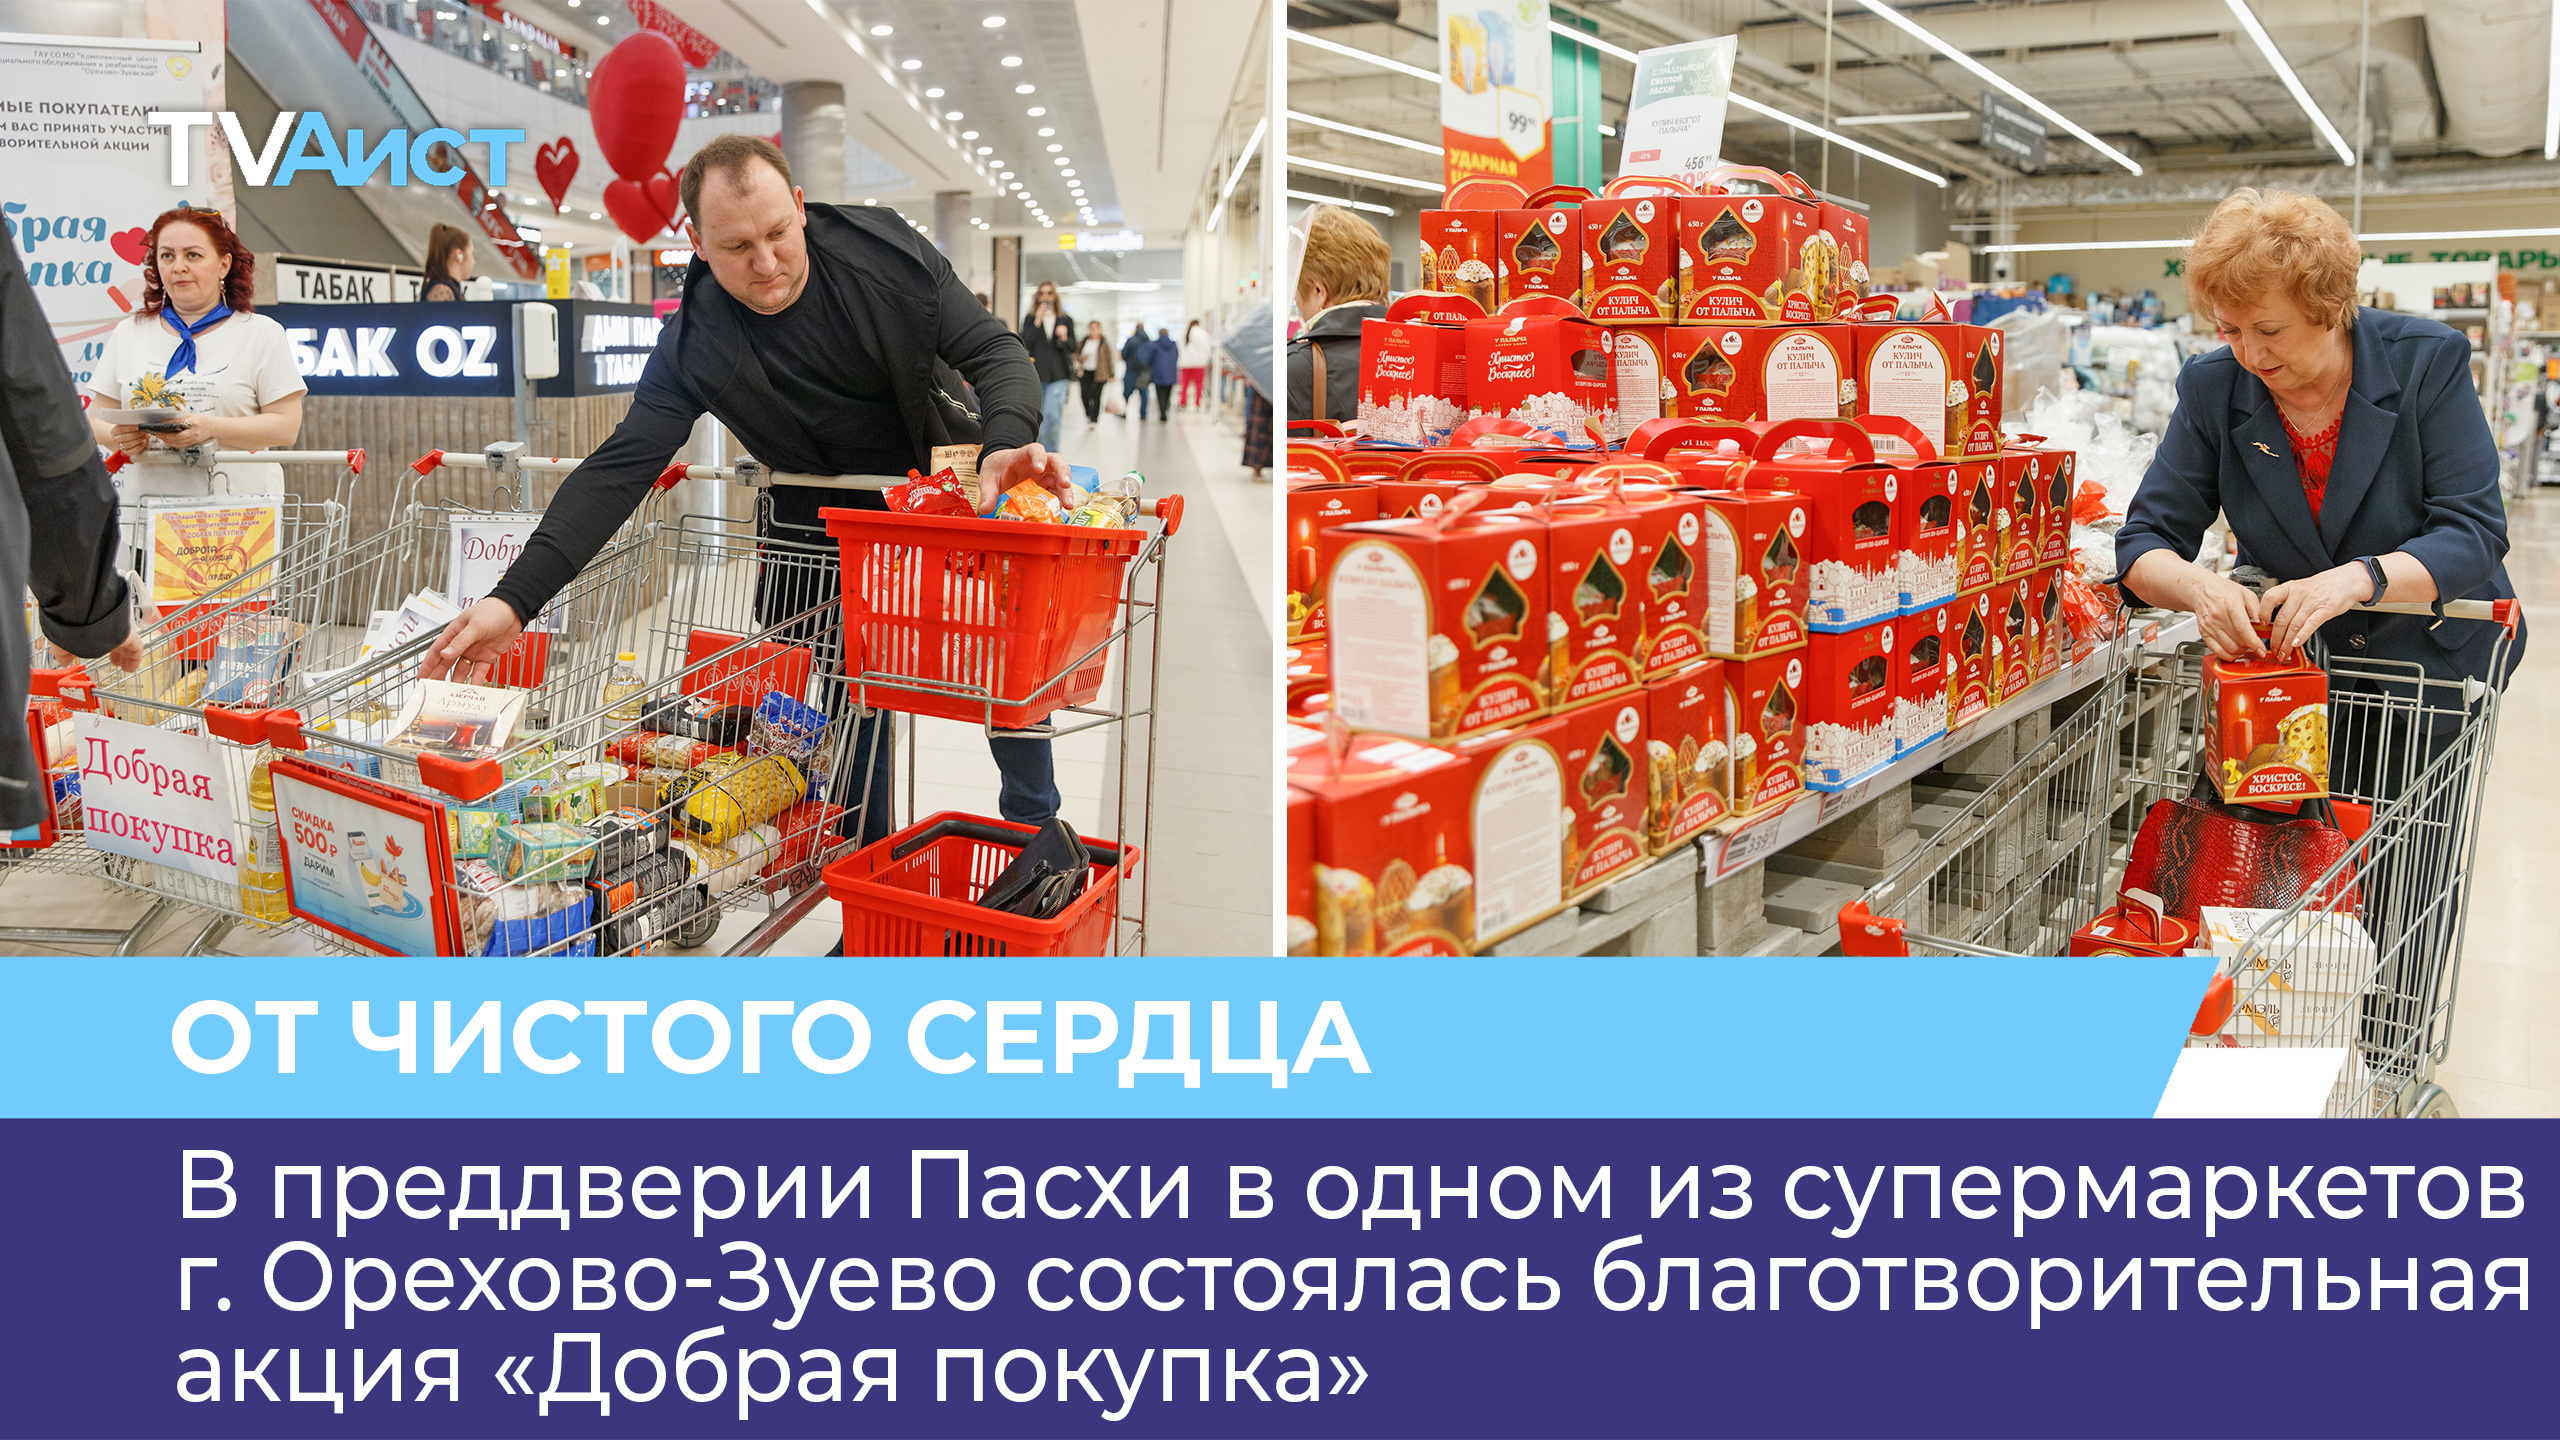 В одном из супермаркетов г. Орехово-Зуево состоялась благотворительная акция «Добрая покупка»